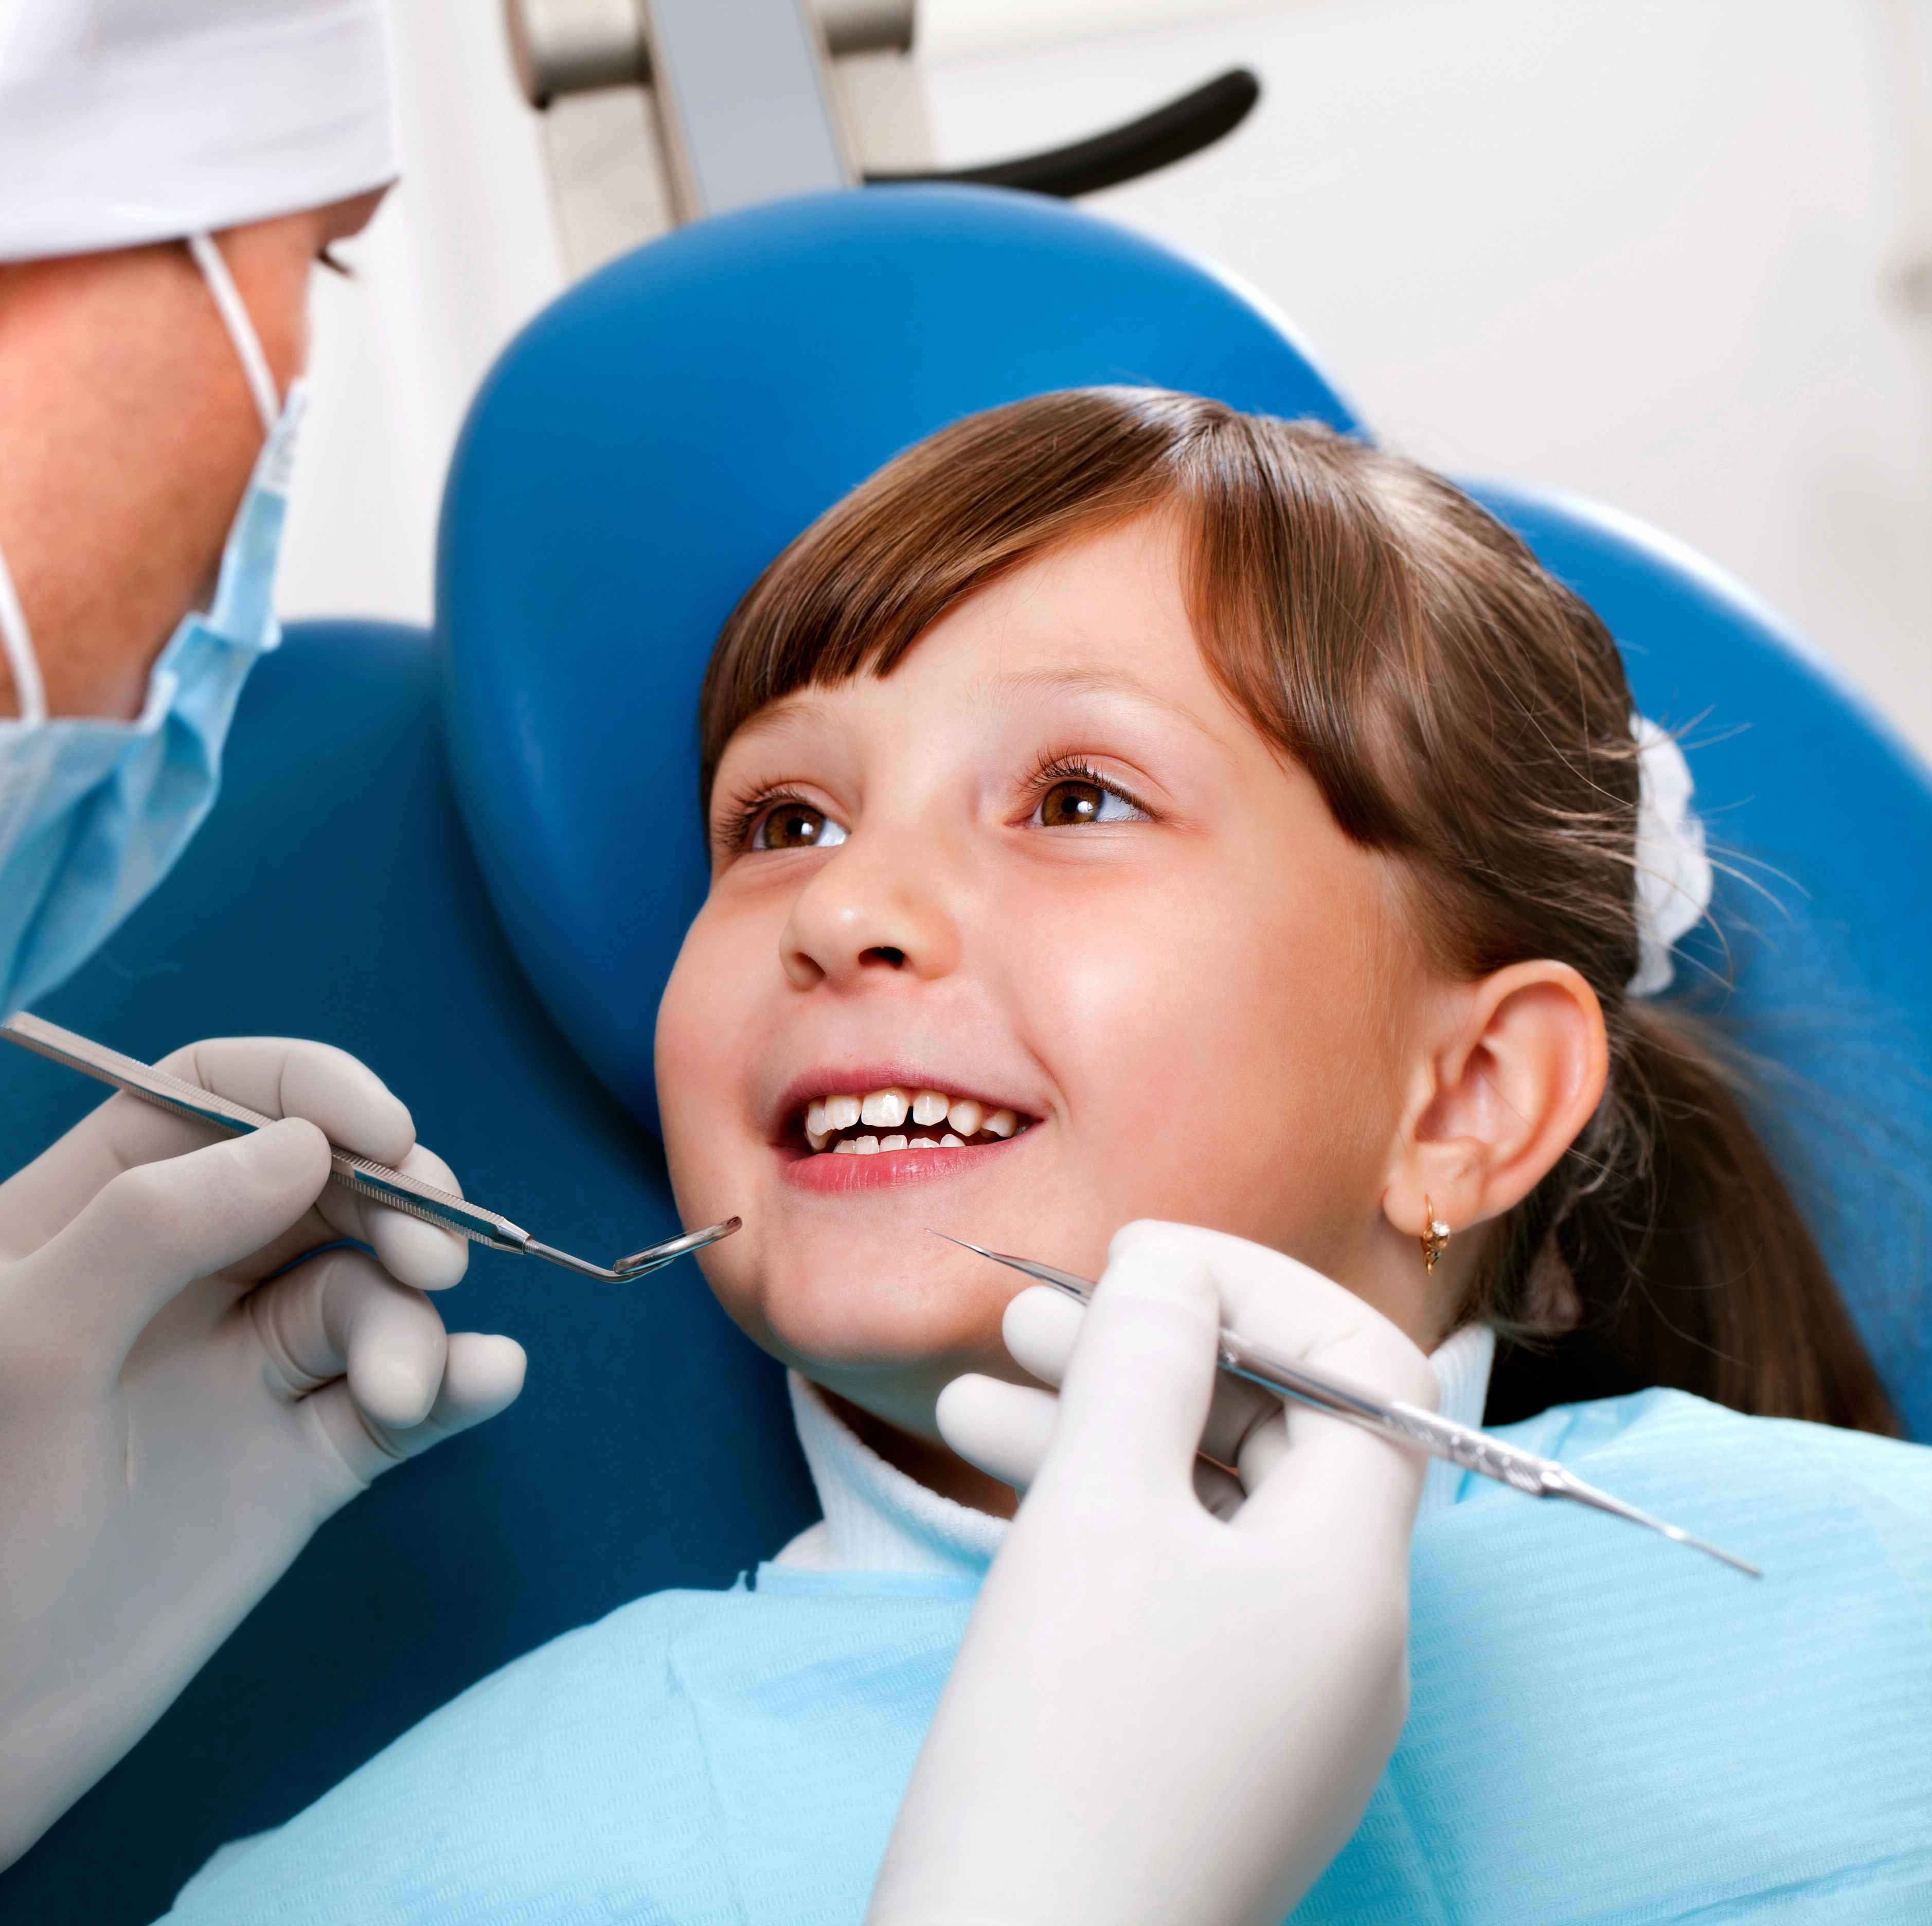 دندانپزشکی کودکان دندانپزشکی بدون درد دندانپزشکی درمان های دندانپزشکی افتادن دندان شیری دندانپزشکی کودکان دندانپزشکی بدون درد دندانپزشکی درمان های دندانپزشکی افتادن دندان شیری دندانپزشکی کودکان دندانپزشکی بدون درد دندانپزشکی درمان های دندانپزشکی افتادن دندان شیری 